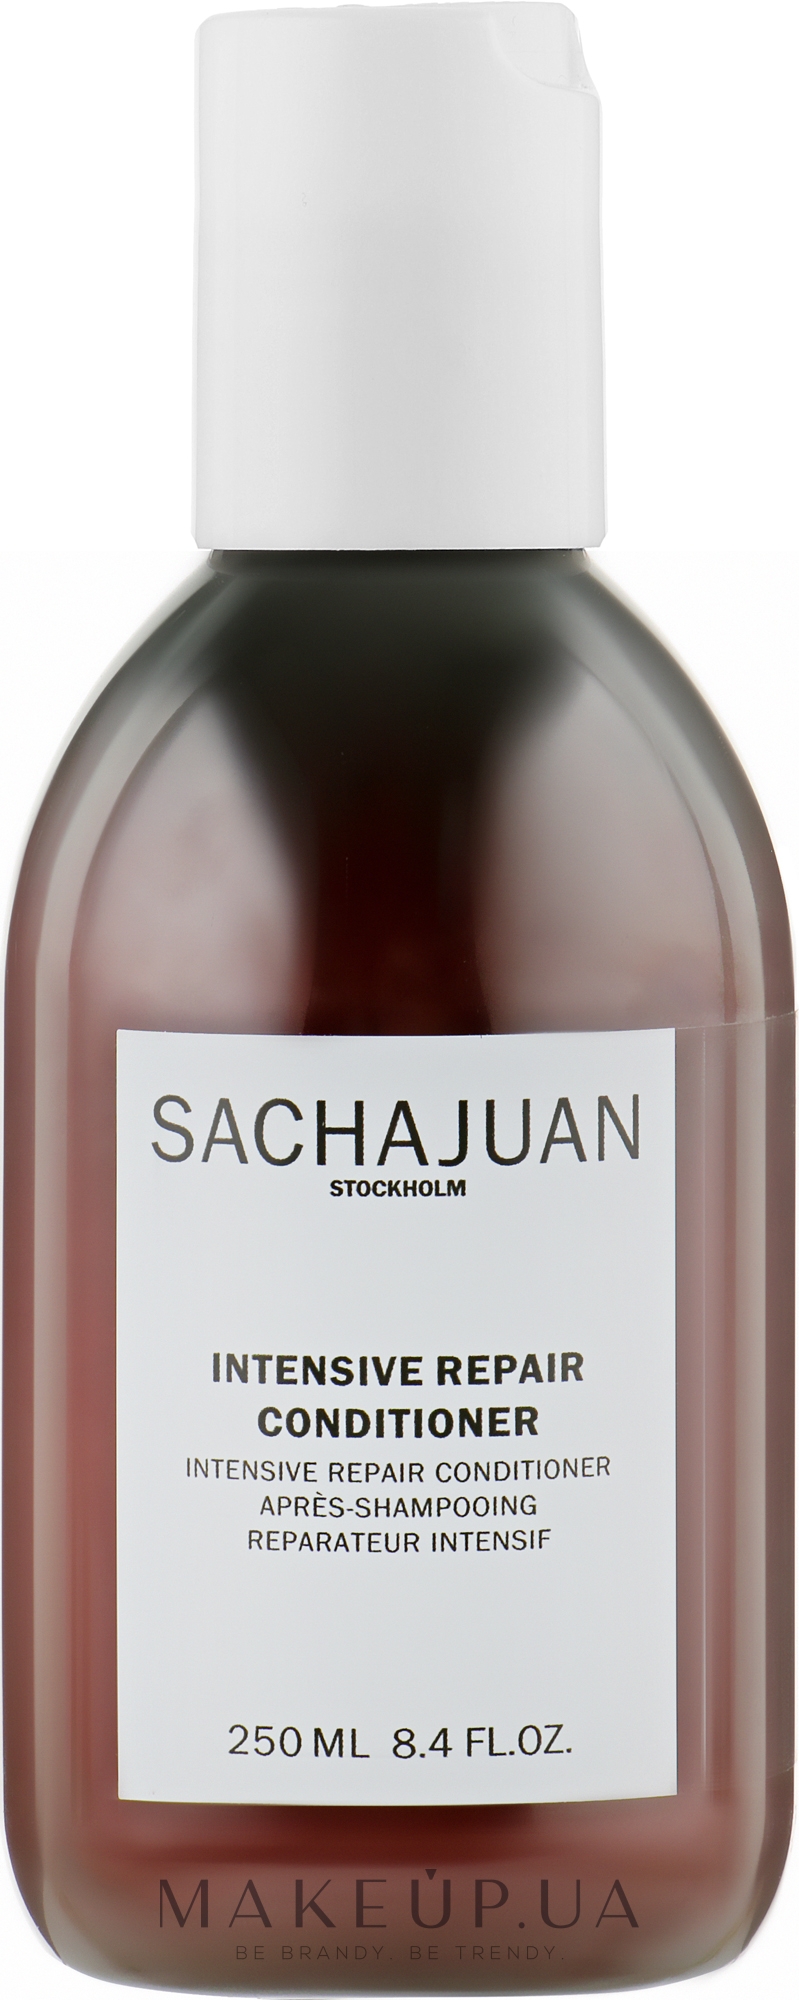 Інтенсивно відновлювальний кондиціонер для волосся - Sachajuan Intensive Repair Conditioner — фото 250ml